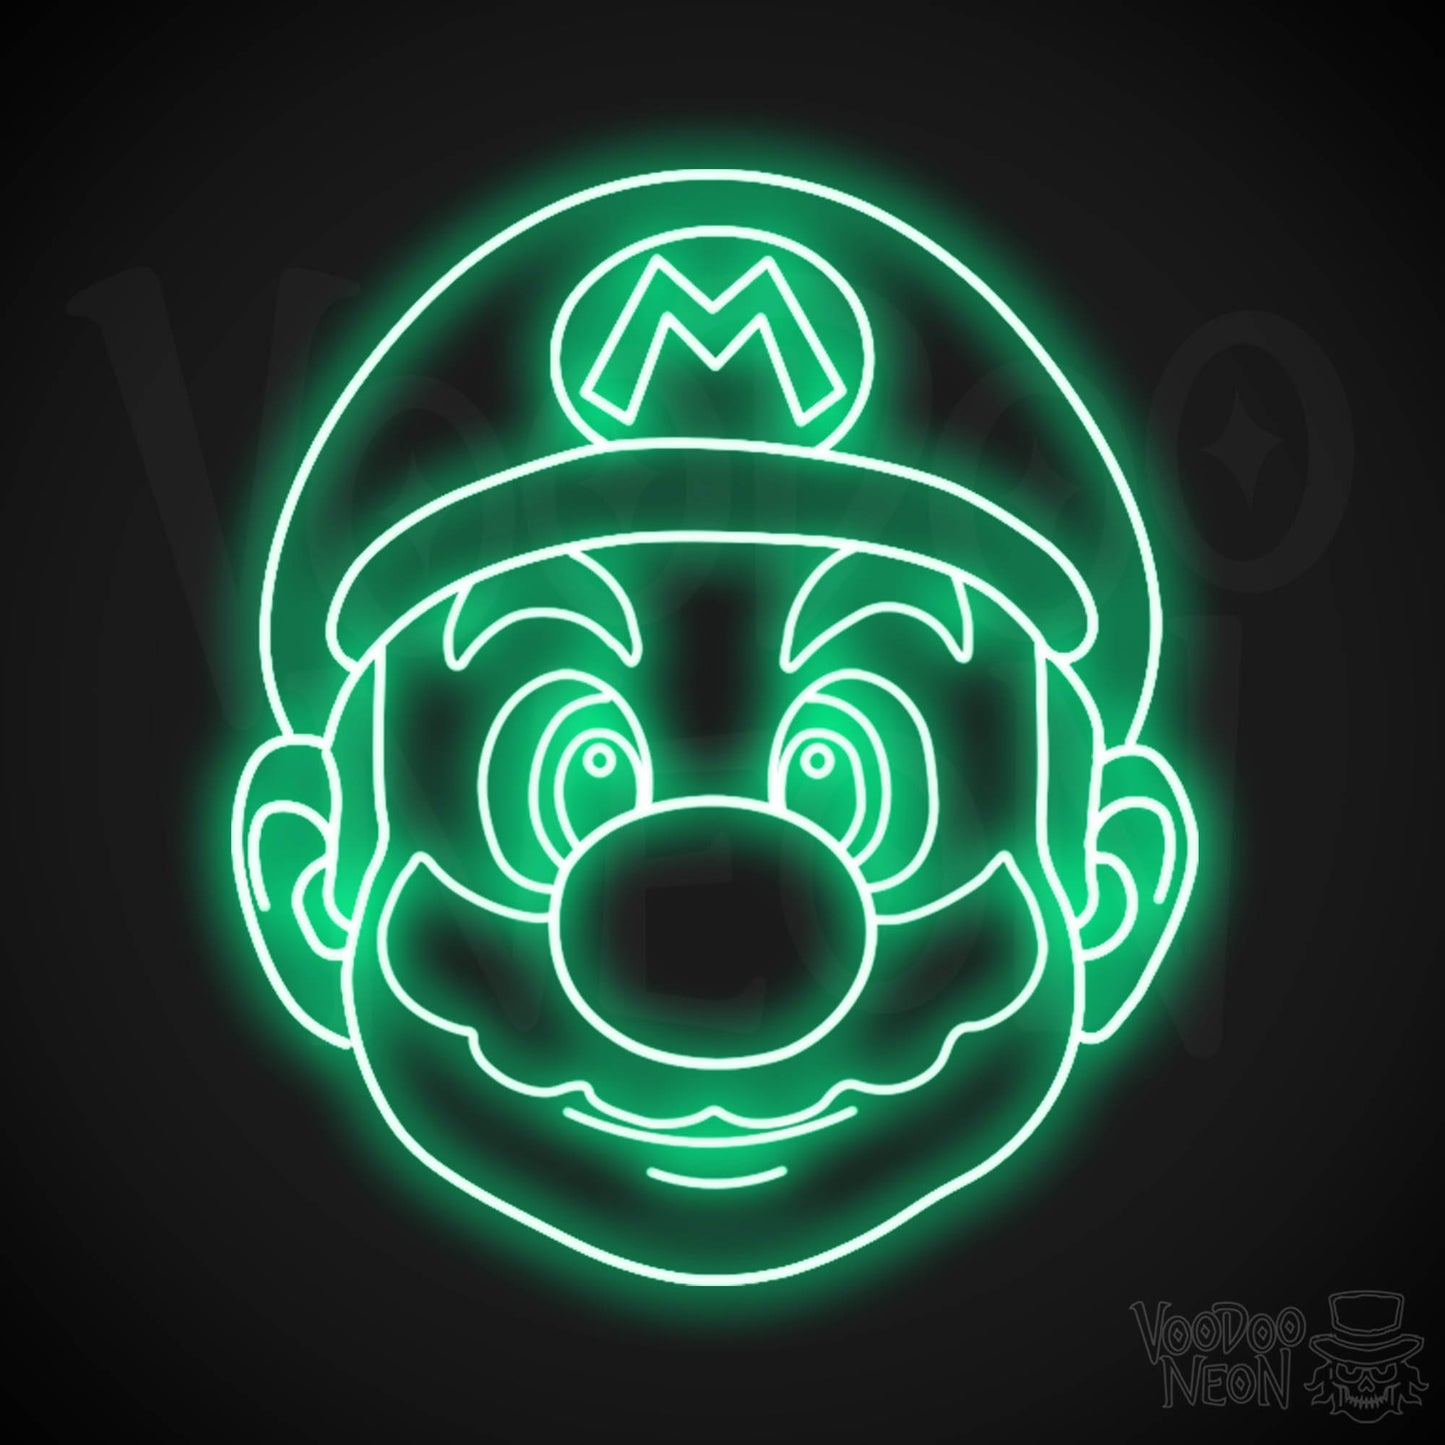 Mario Neon Sign - Mario Sign - Mario Wall Art - LED Neon Wall Art - Color Green